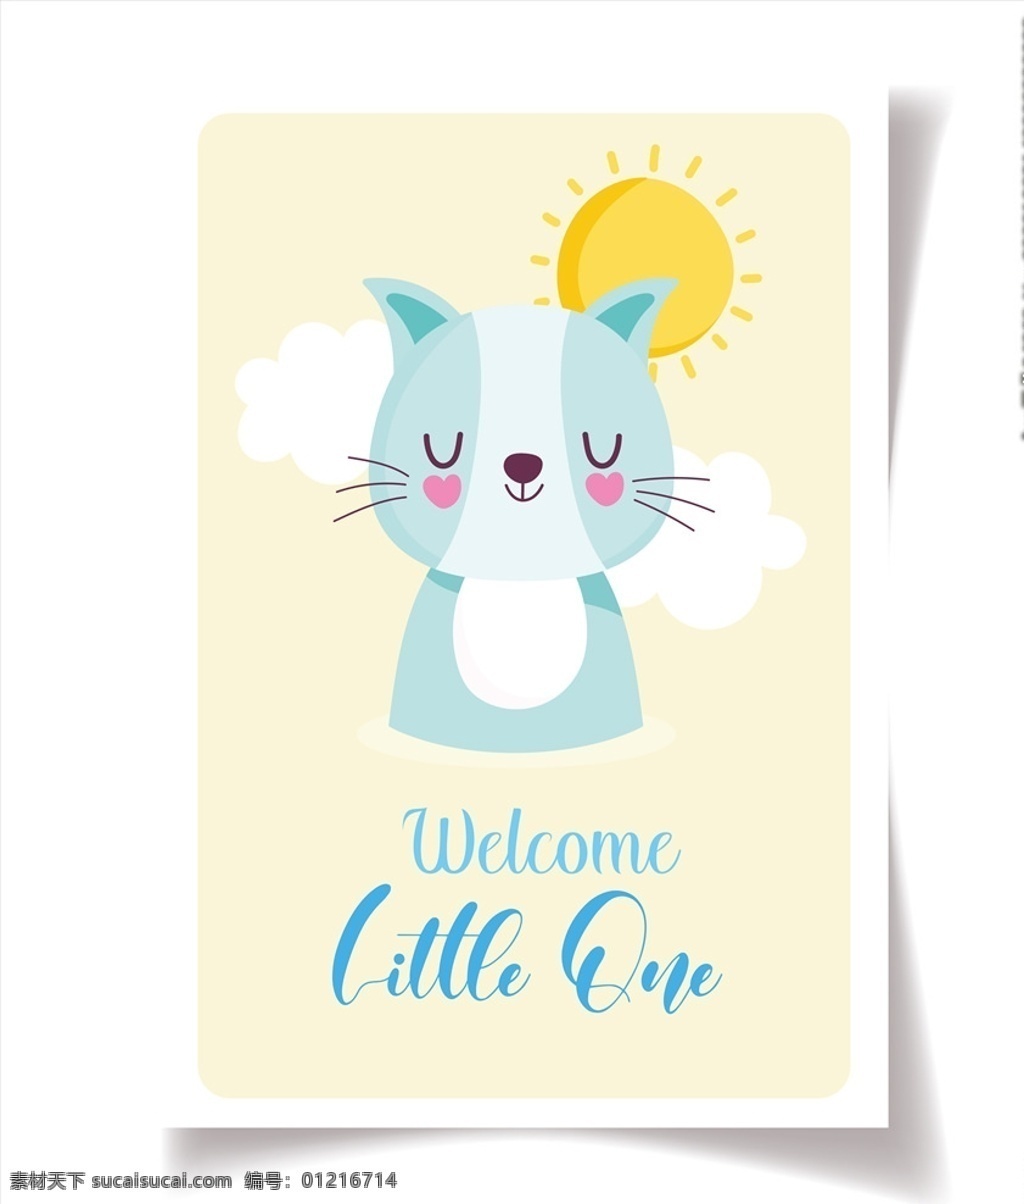 手绘 淡 彩 动物图片 手绘淡彩动物 卡通 动物 可爱 卡哇伊 动物卡片 动物封面 卡通动物生物 卡通设计